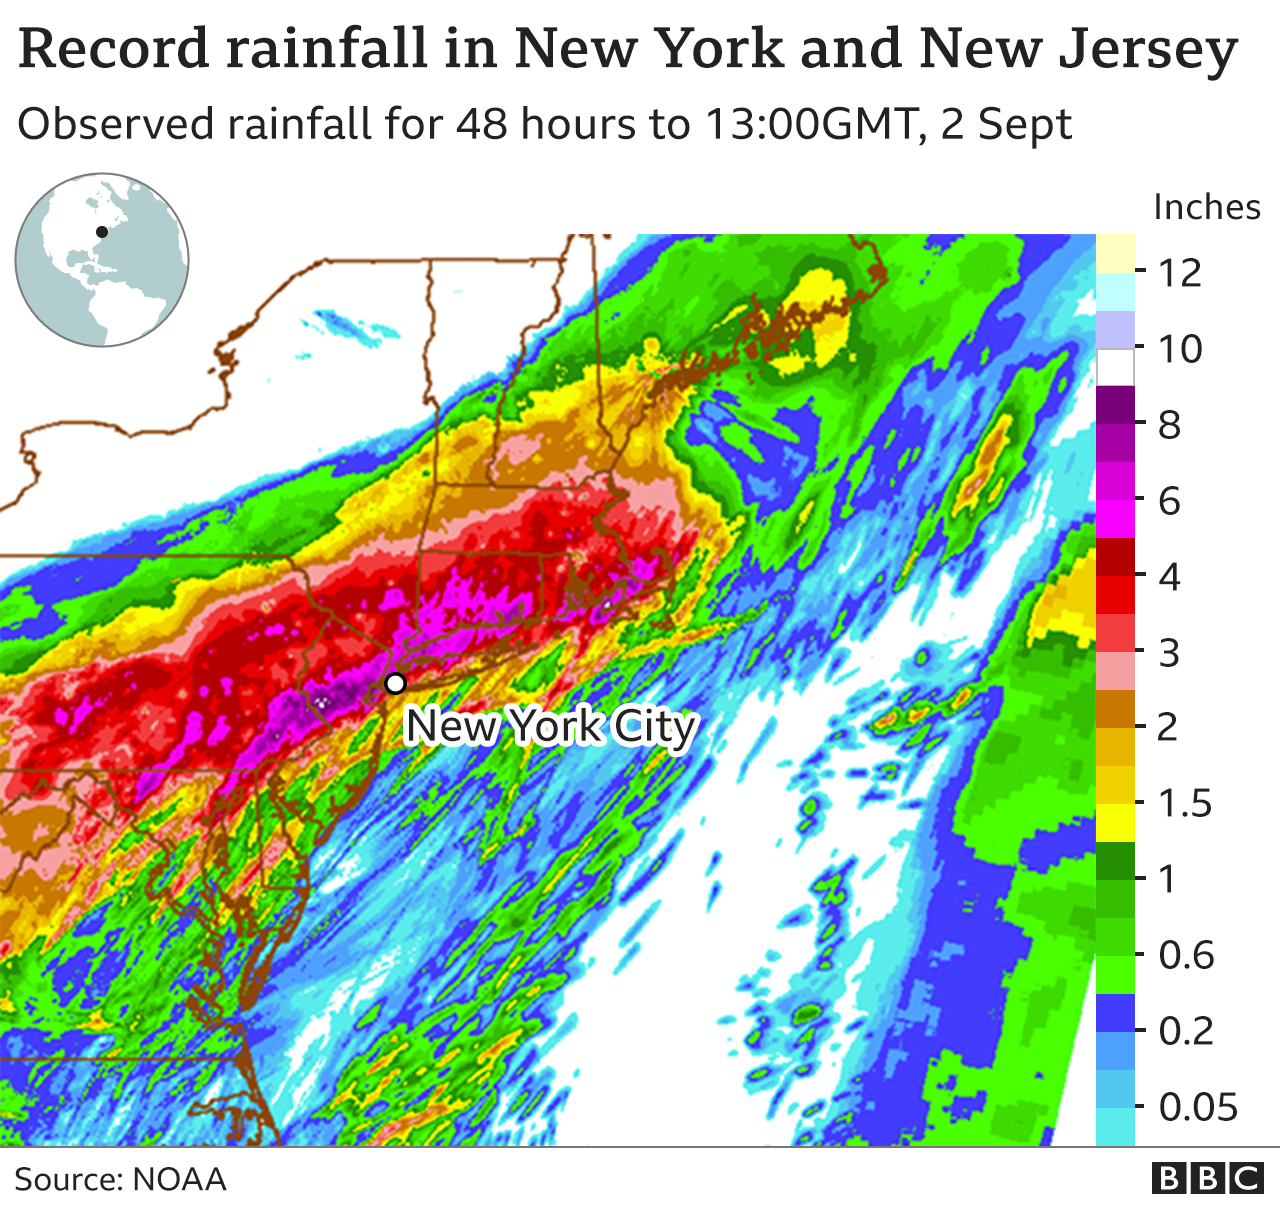 Карта, показывающая рекордные уровни осадков над Нью-Йорком